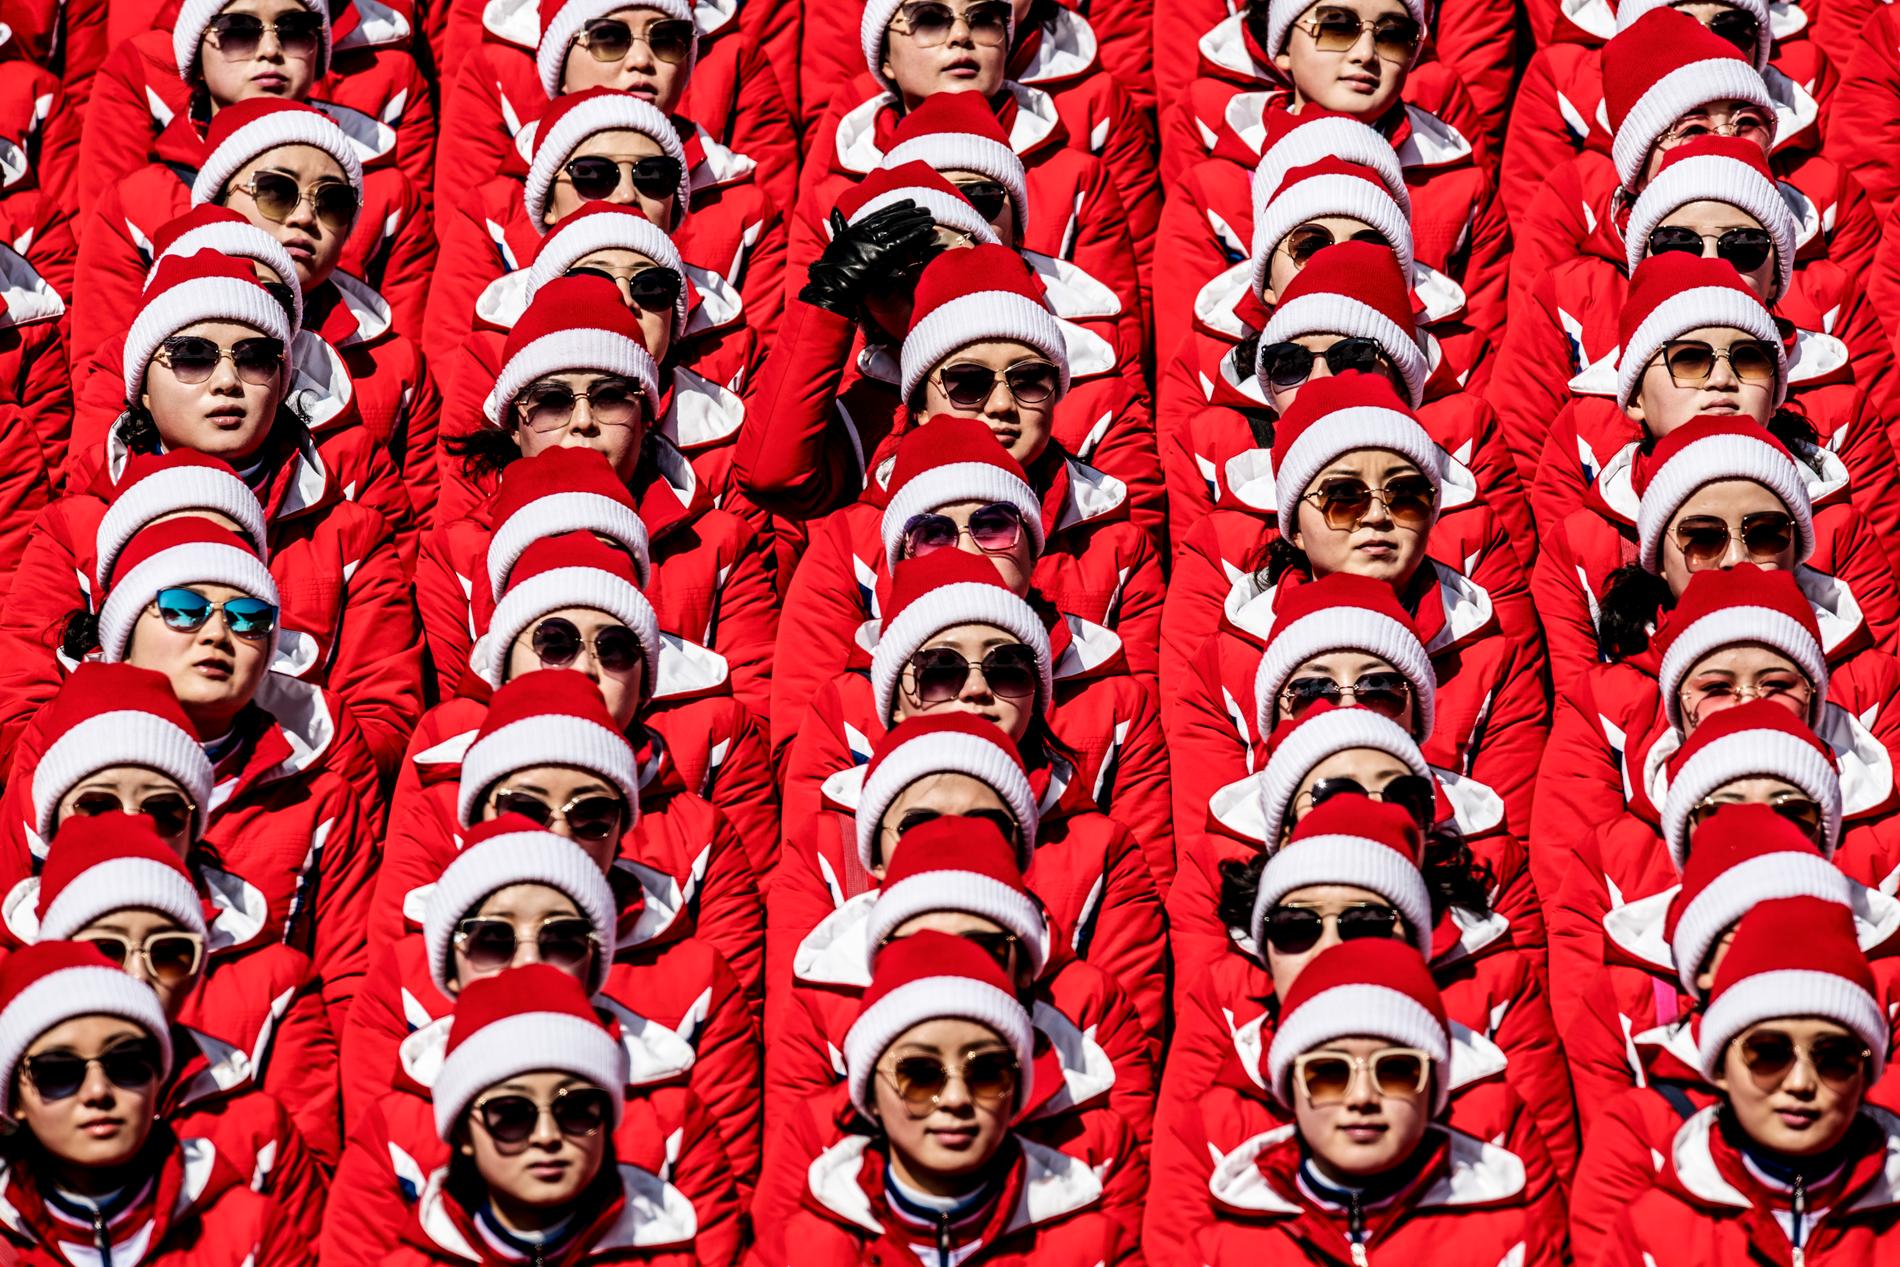 Med solglasögon av märken som Fendi och Dior är ”Skönhetens armé” på OS-läktaren. Nordkoreas ledare, Kim Jong-Un, har skickat den 230 personer stora hejarklacken till Sydkorea. Klackmedlemmarna är utvalda utifrån längd och familjebakgrund. Cirka 60 kvinnor är på Yongpyong Alpine Centre för att heja fram den nordkoreanska slalomåkaren Myong Gwang Choe, som slutar sist den 22 februari 2018. 